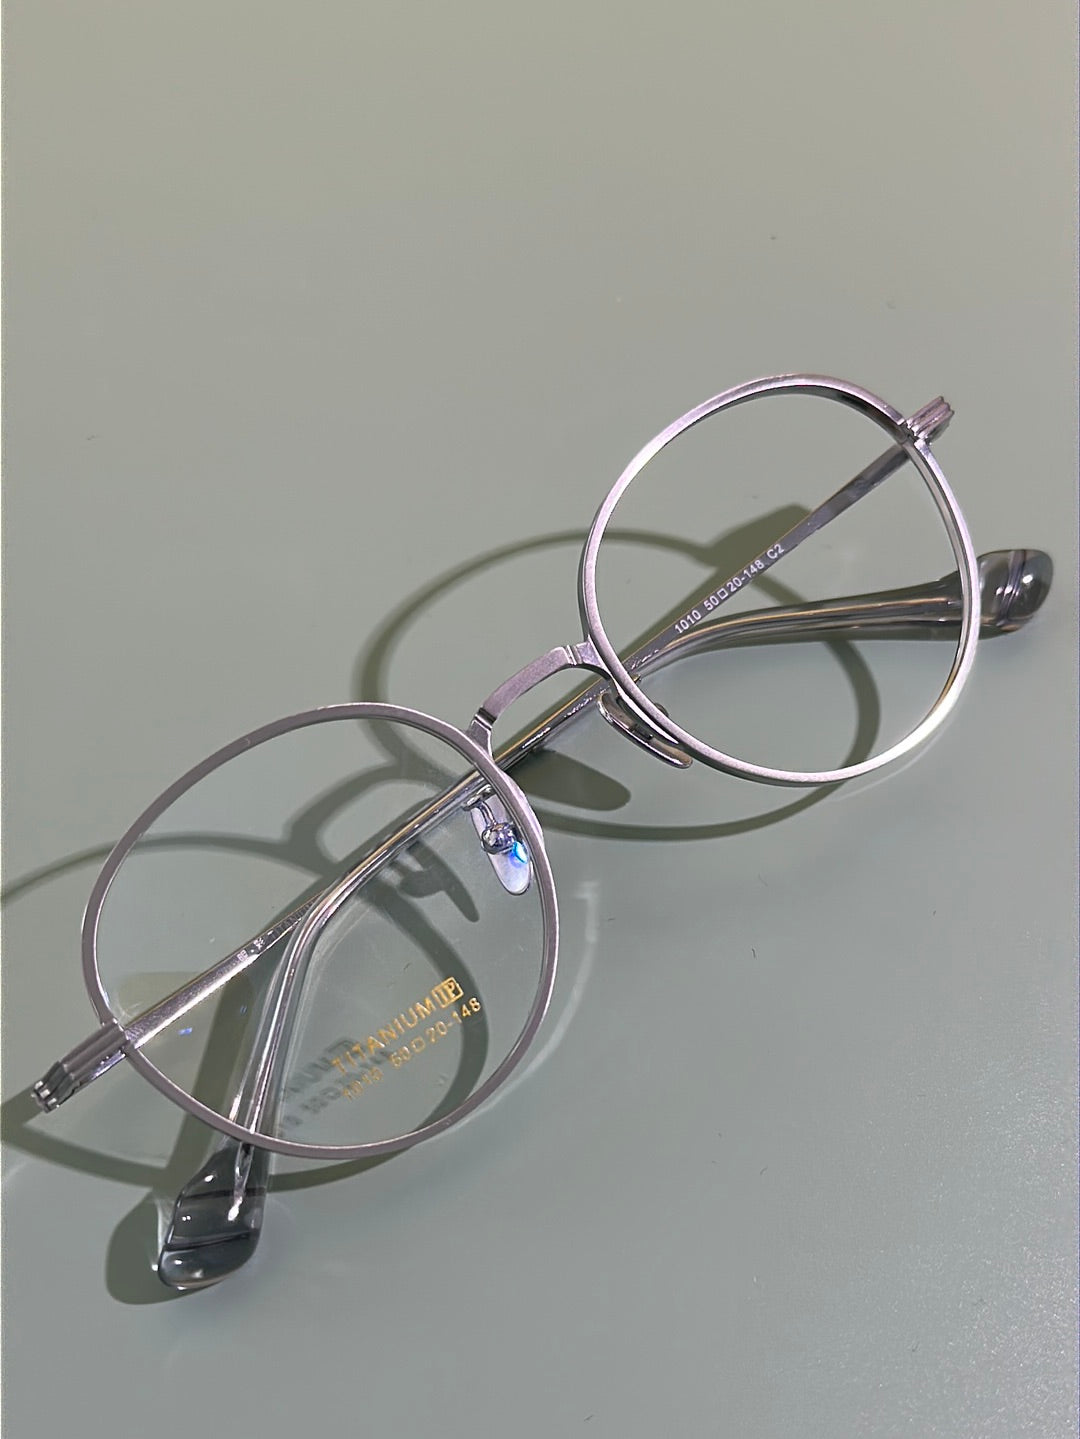 Are titanium glasses worth it?